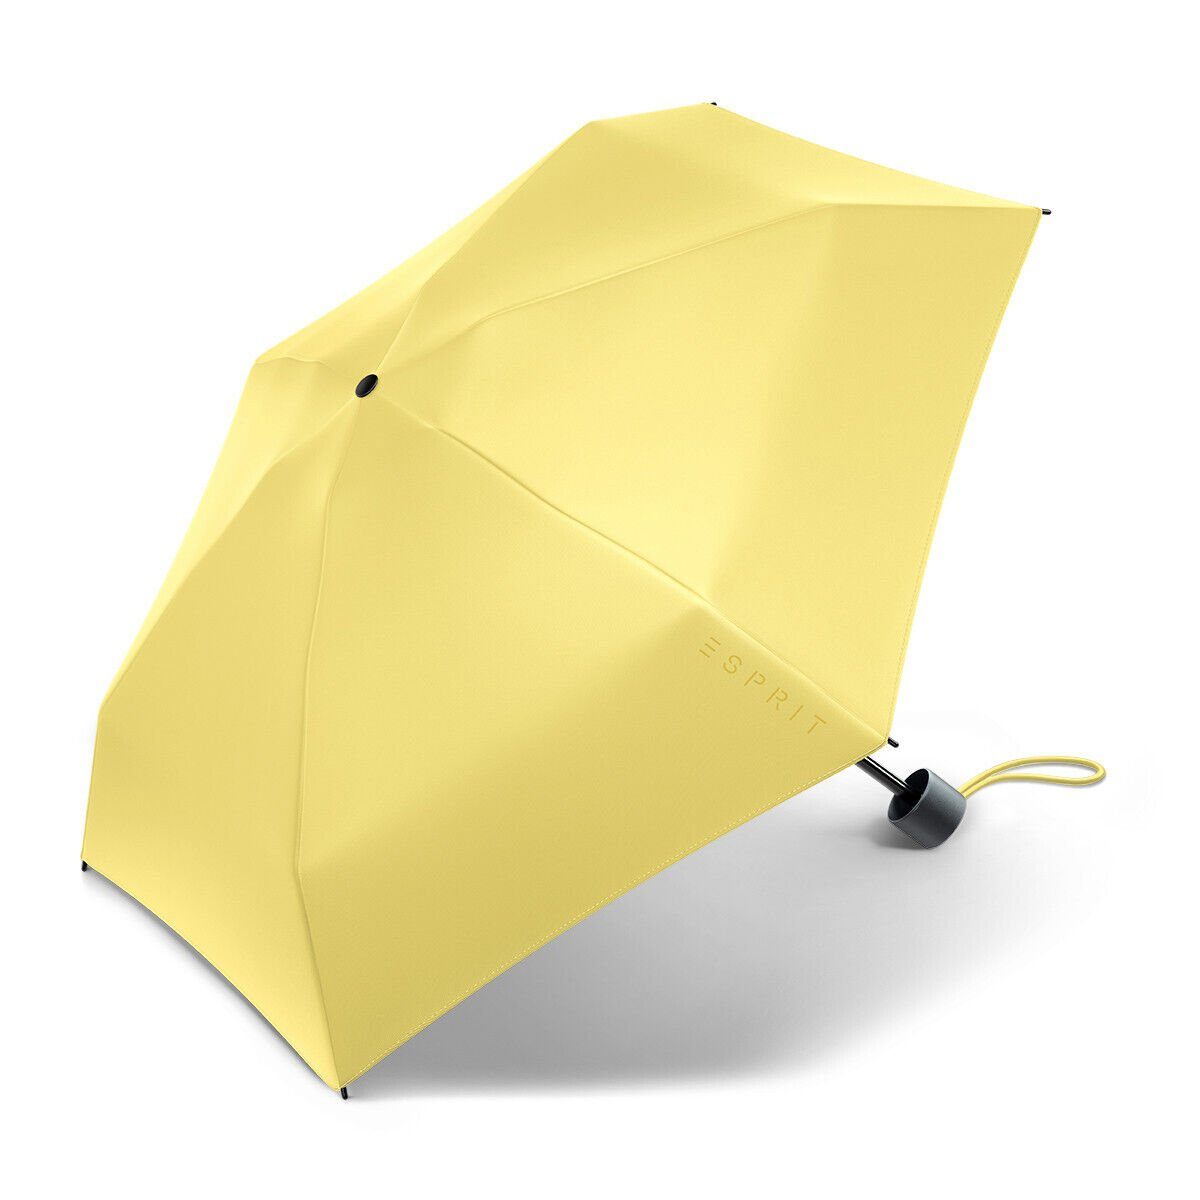 Petito Taschenregenschirm Esprit yellow kompakter cream Regenschirm